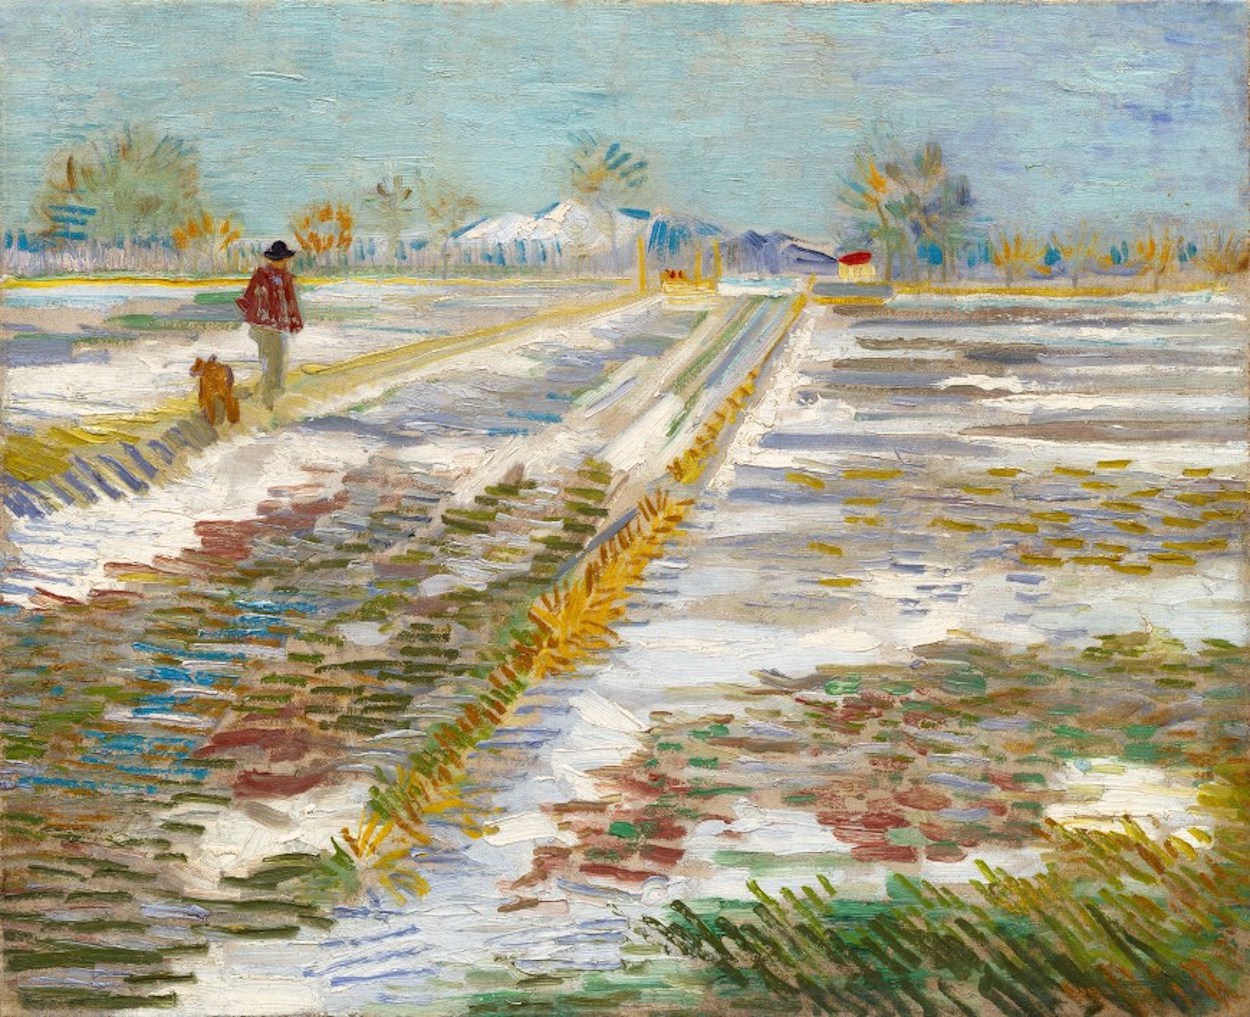 Landschaft mit Schnee by Vincent van Gogh - 1888 - 38 x 46 cm Solomon R. Guggenheim Museum